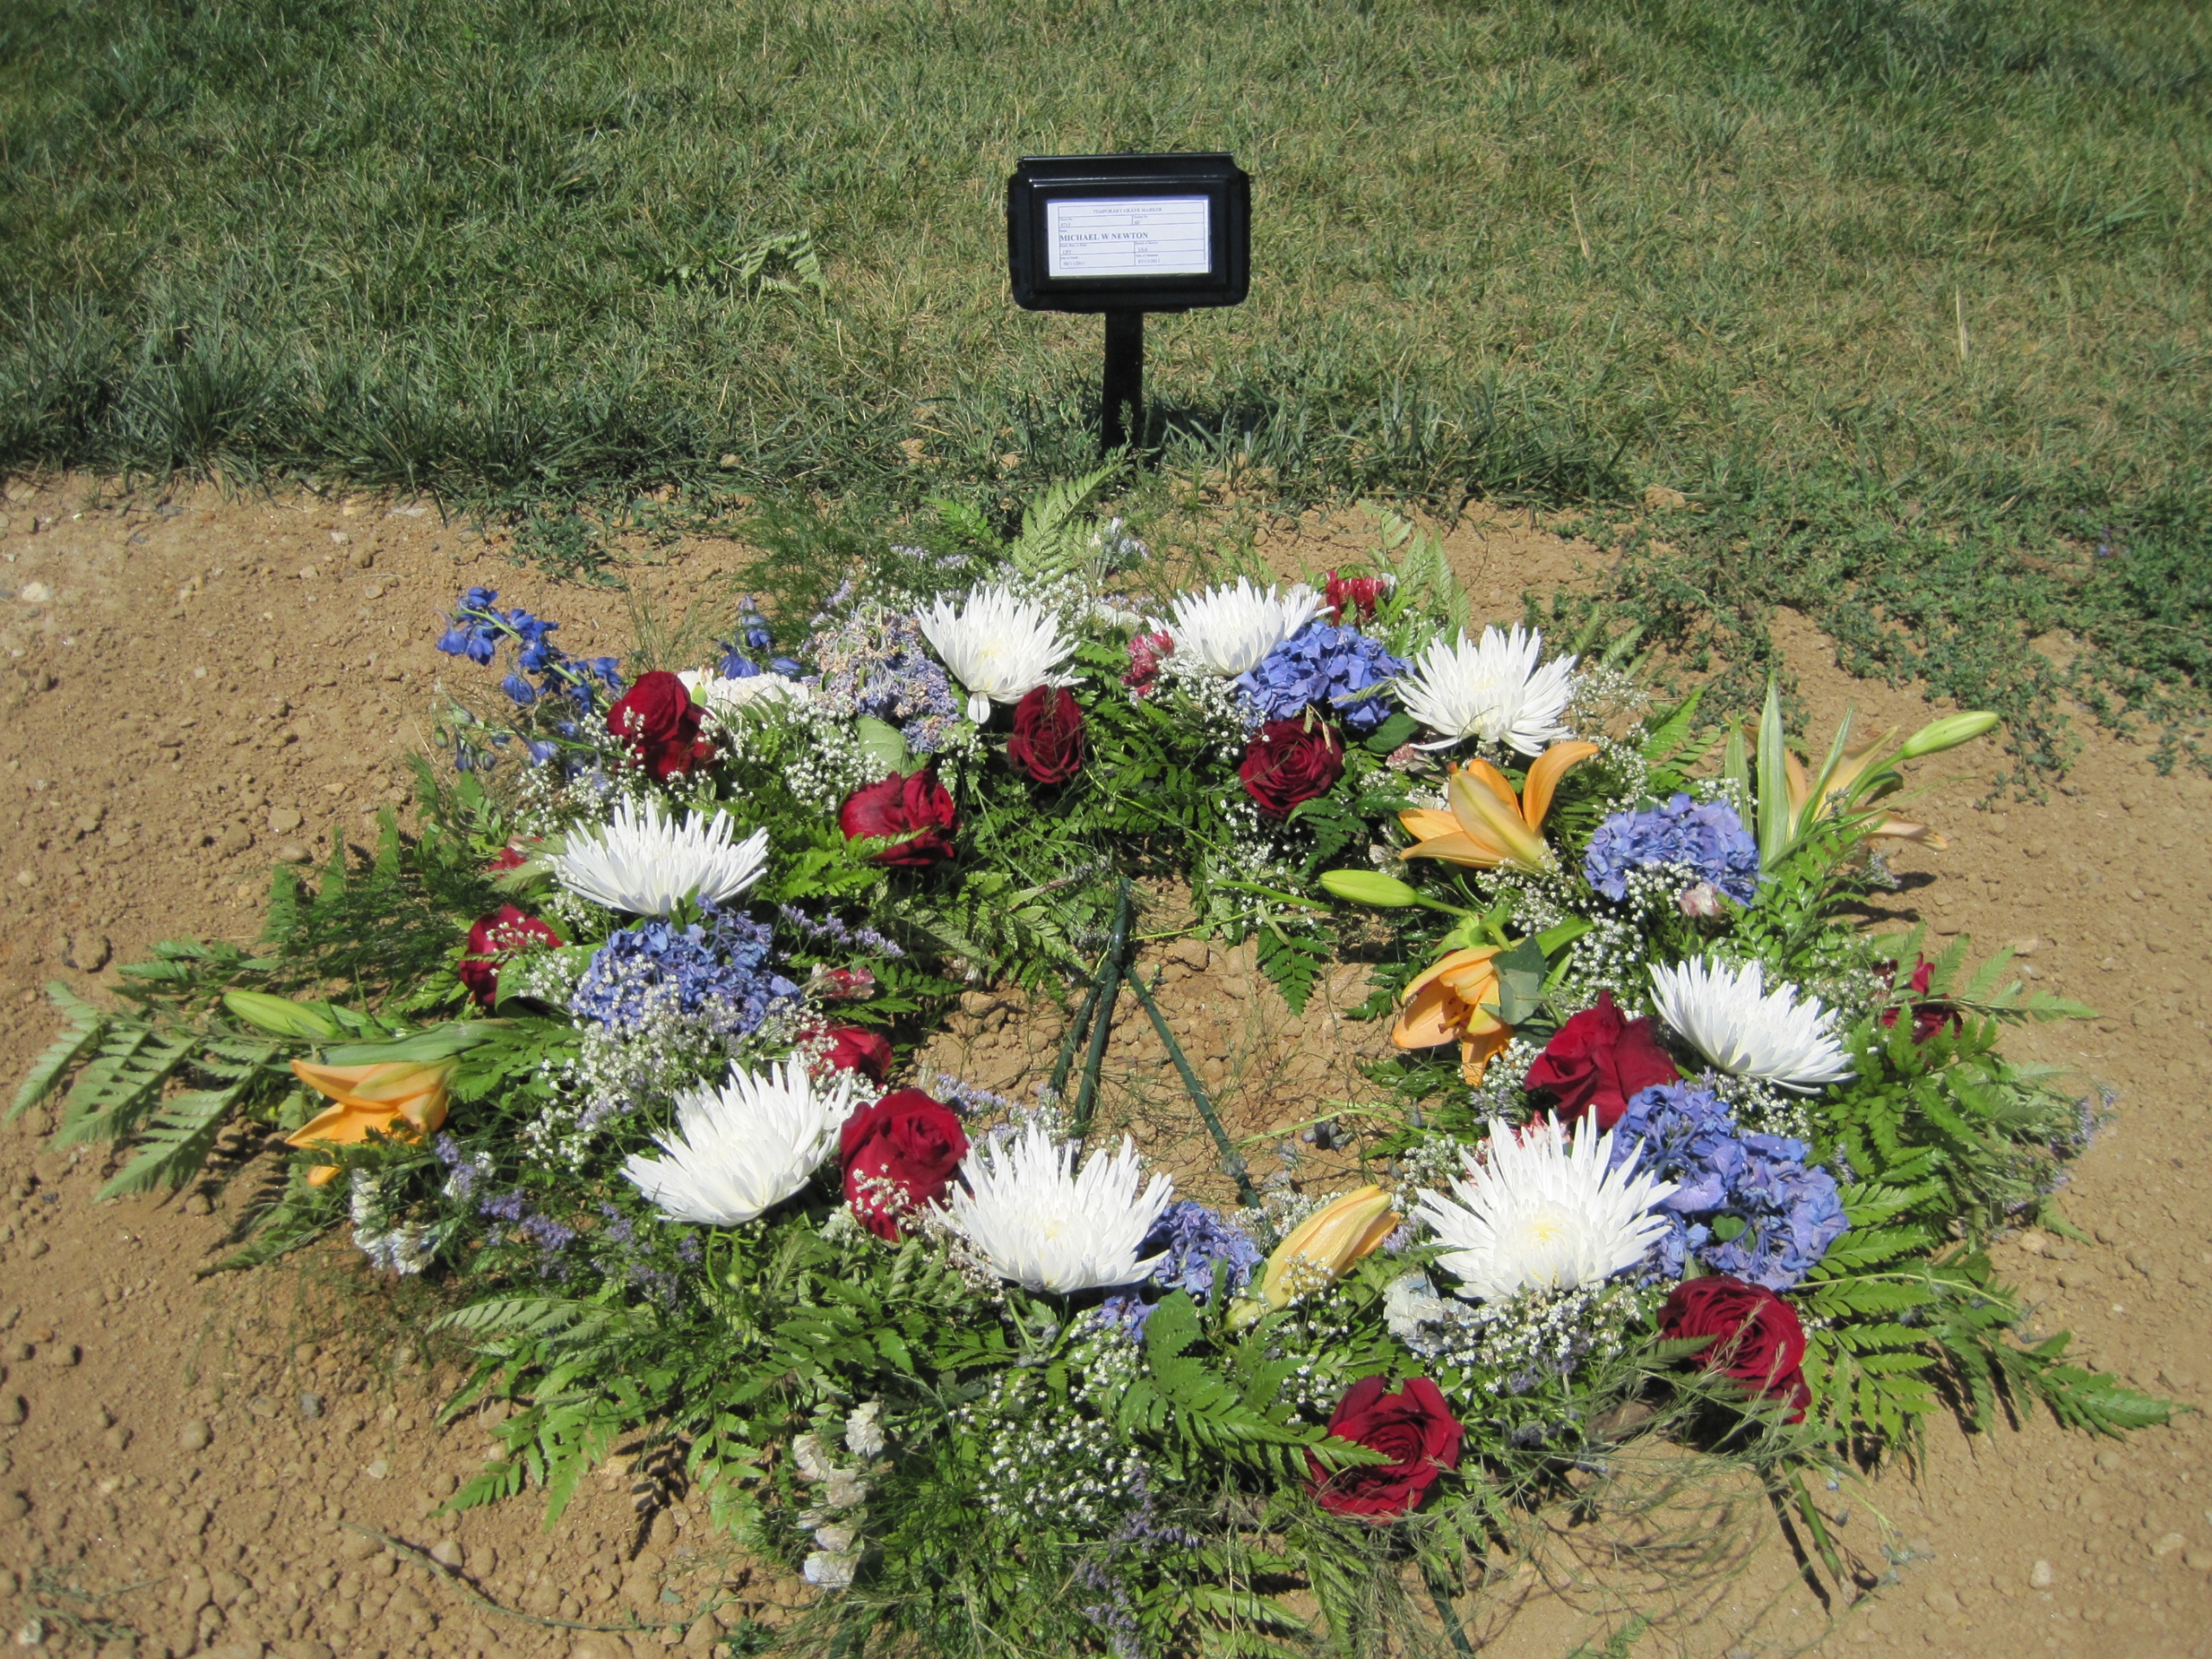 mwnewton-gravesite-photo-by-eileen-horan-july-2011-002